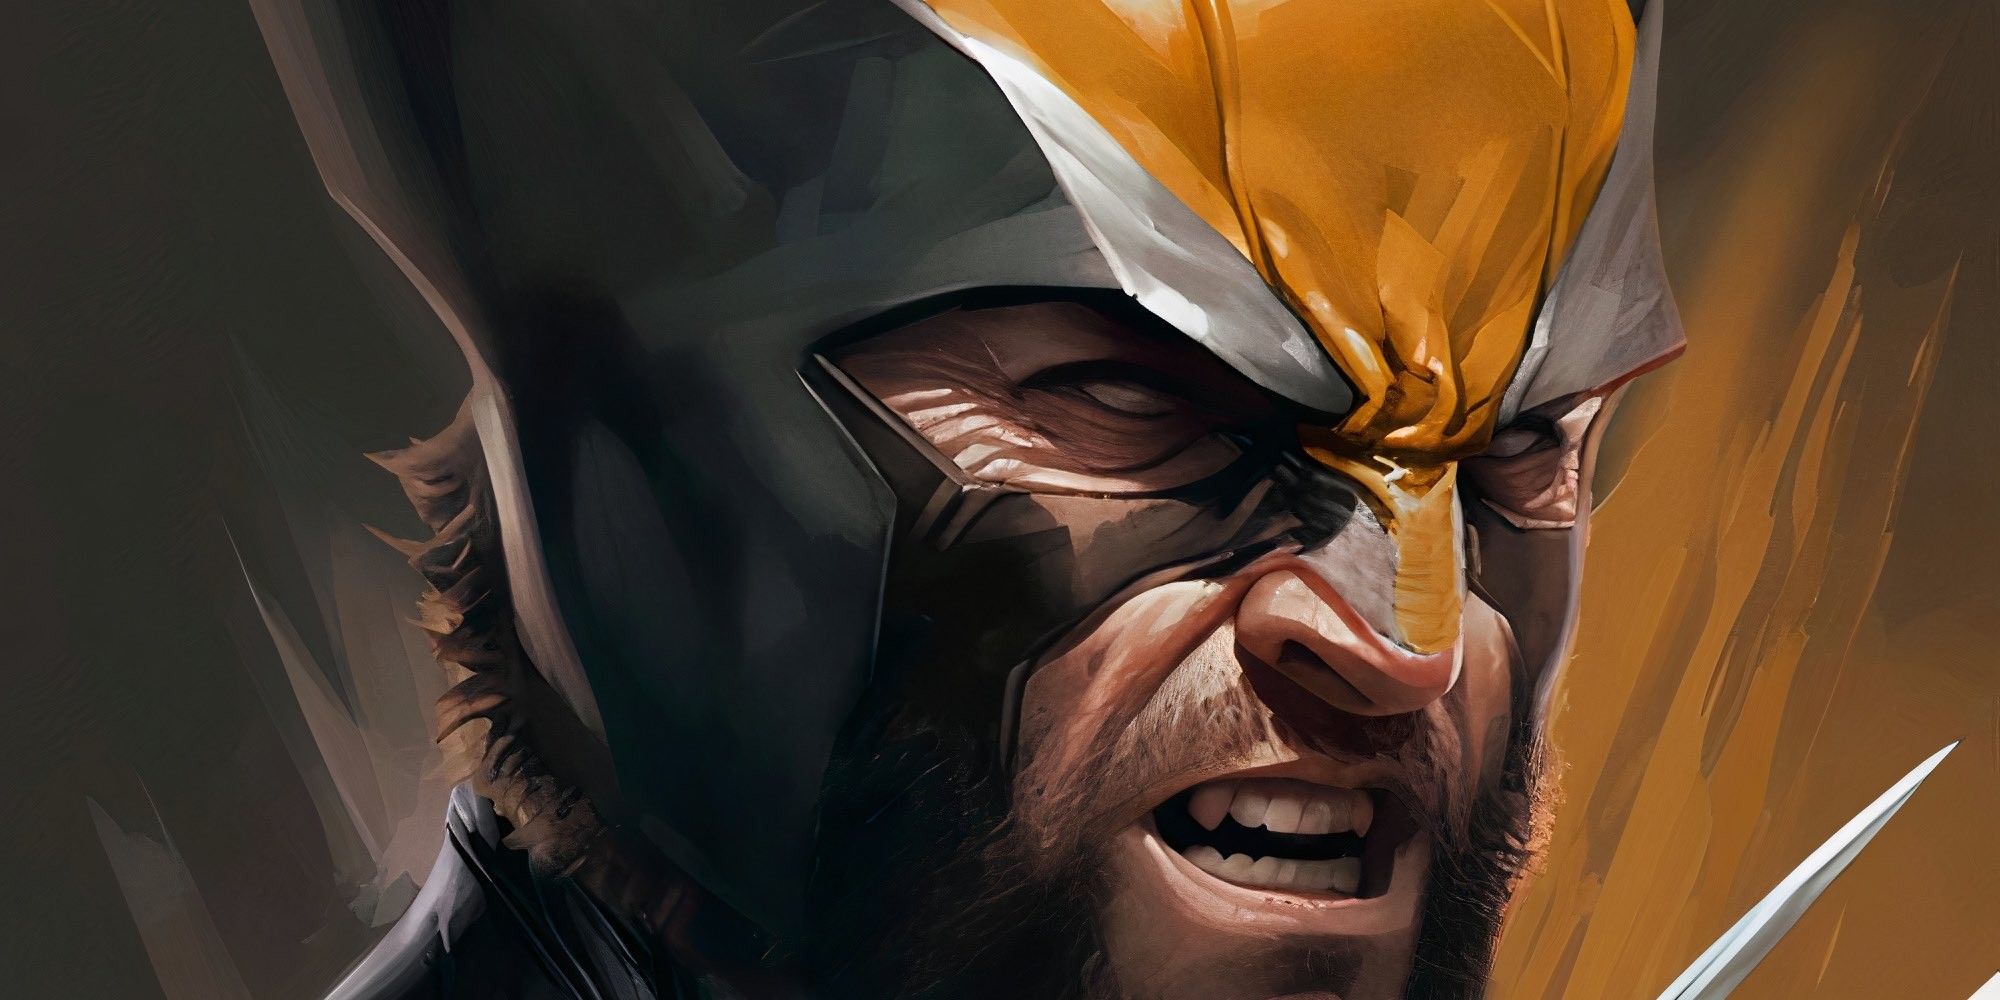 Hugh Jackman obtiene un traje de Wolverine amarillo con precisión de cómic en un arte impresionante